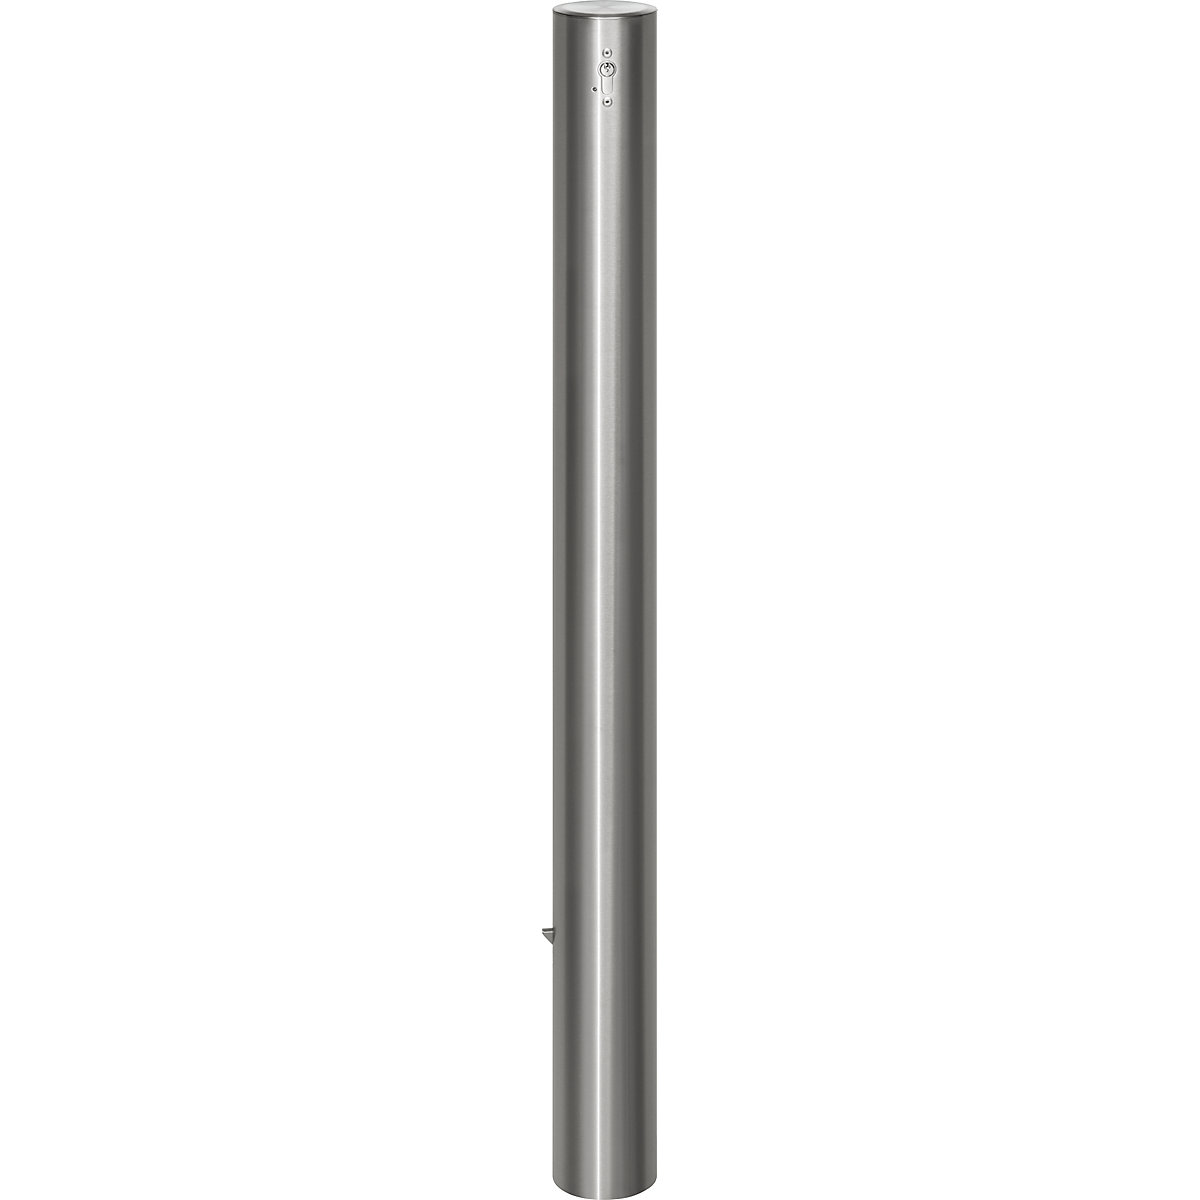 Edelstahl-Sperrpfosten, mit Flachkopf, Bodenhülse zum Einbetonieren, Ø 102 mm, Profilzylinder